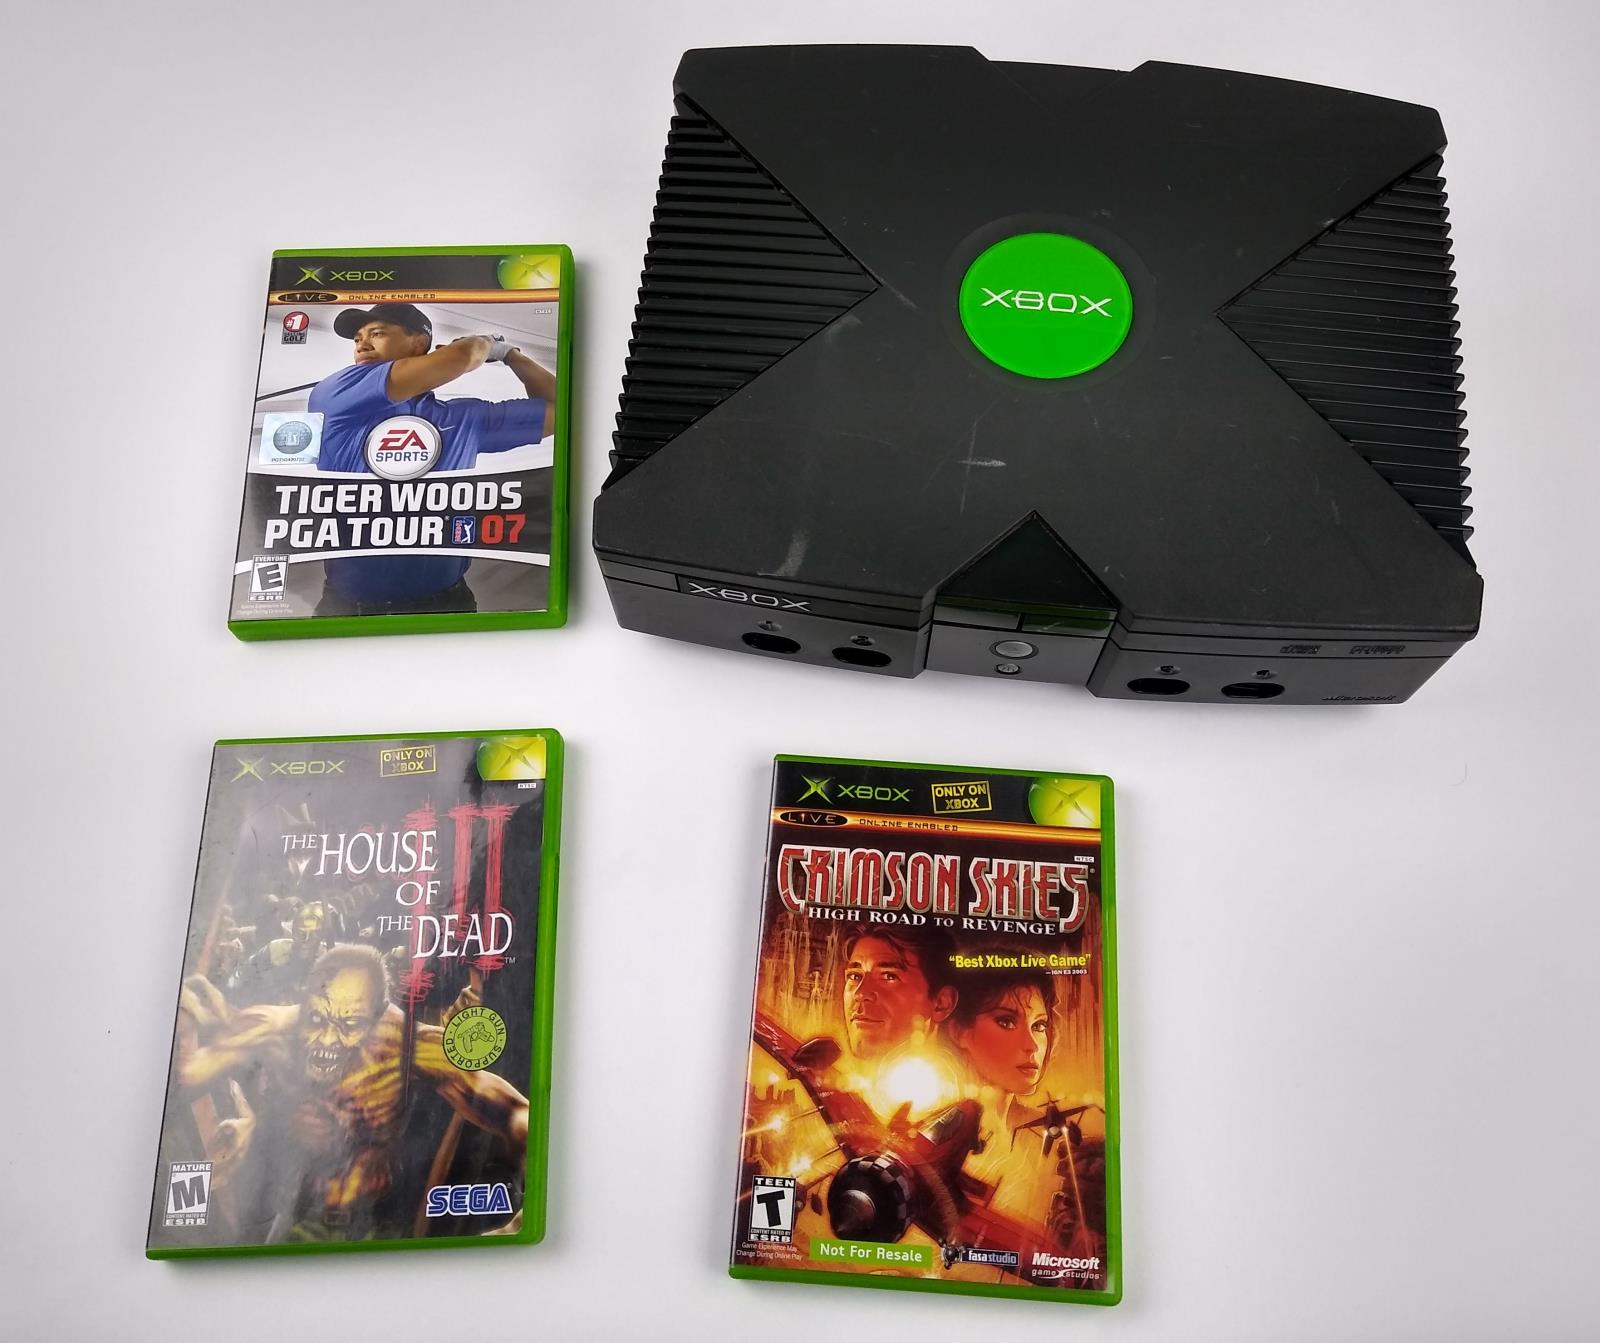 Original Microsoft Xbox Console Com Jogos Testado E Funcionando Ebay - 1700 robux para xbox